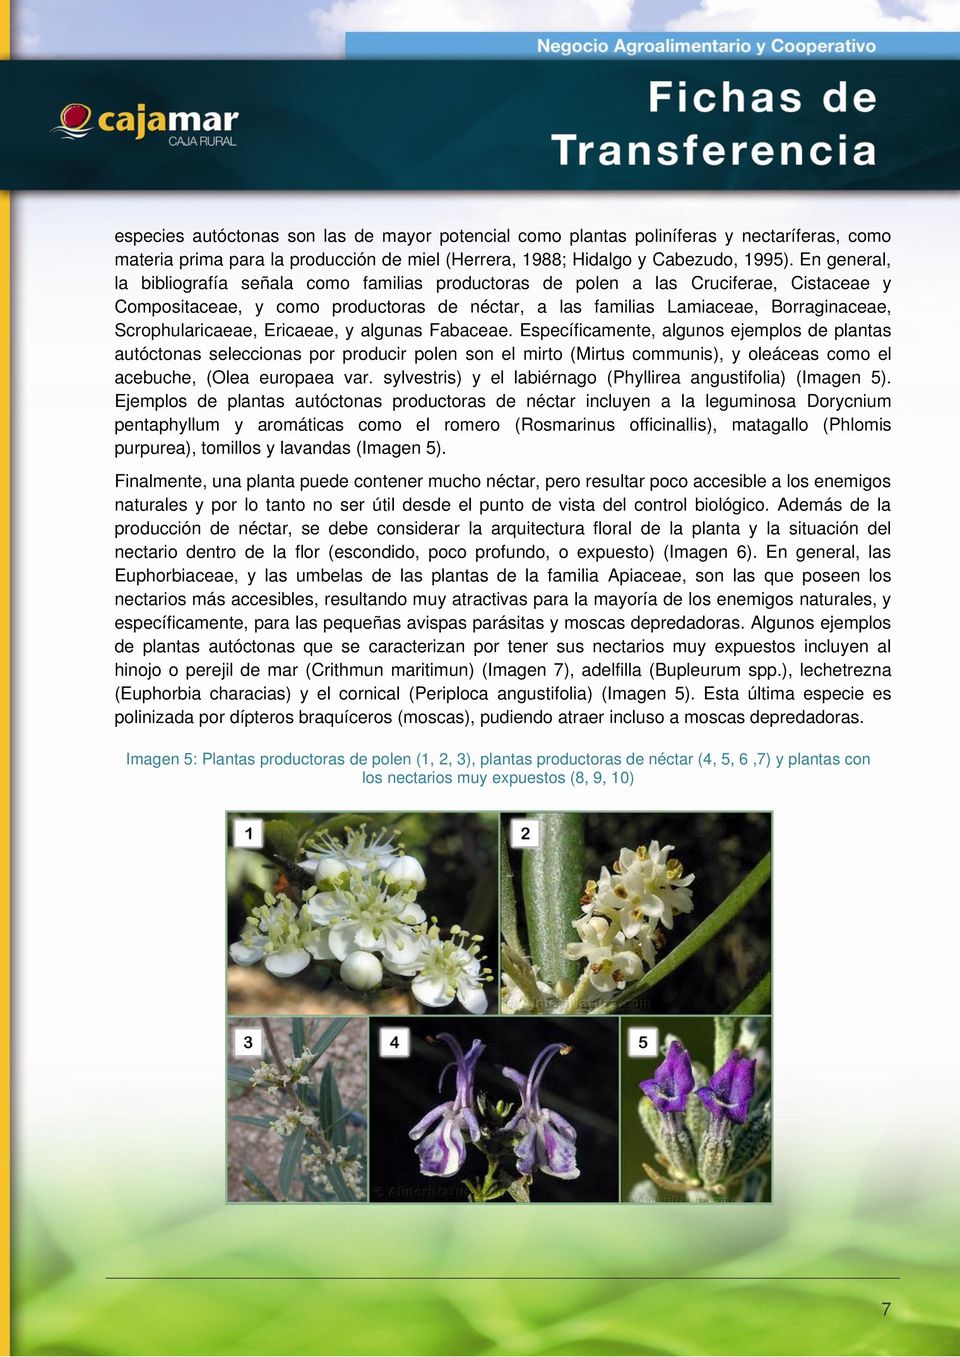 Scrophularicaeae, Ericaeae, y algunas Fabaceae.